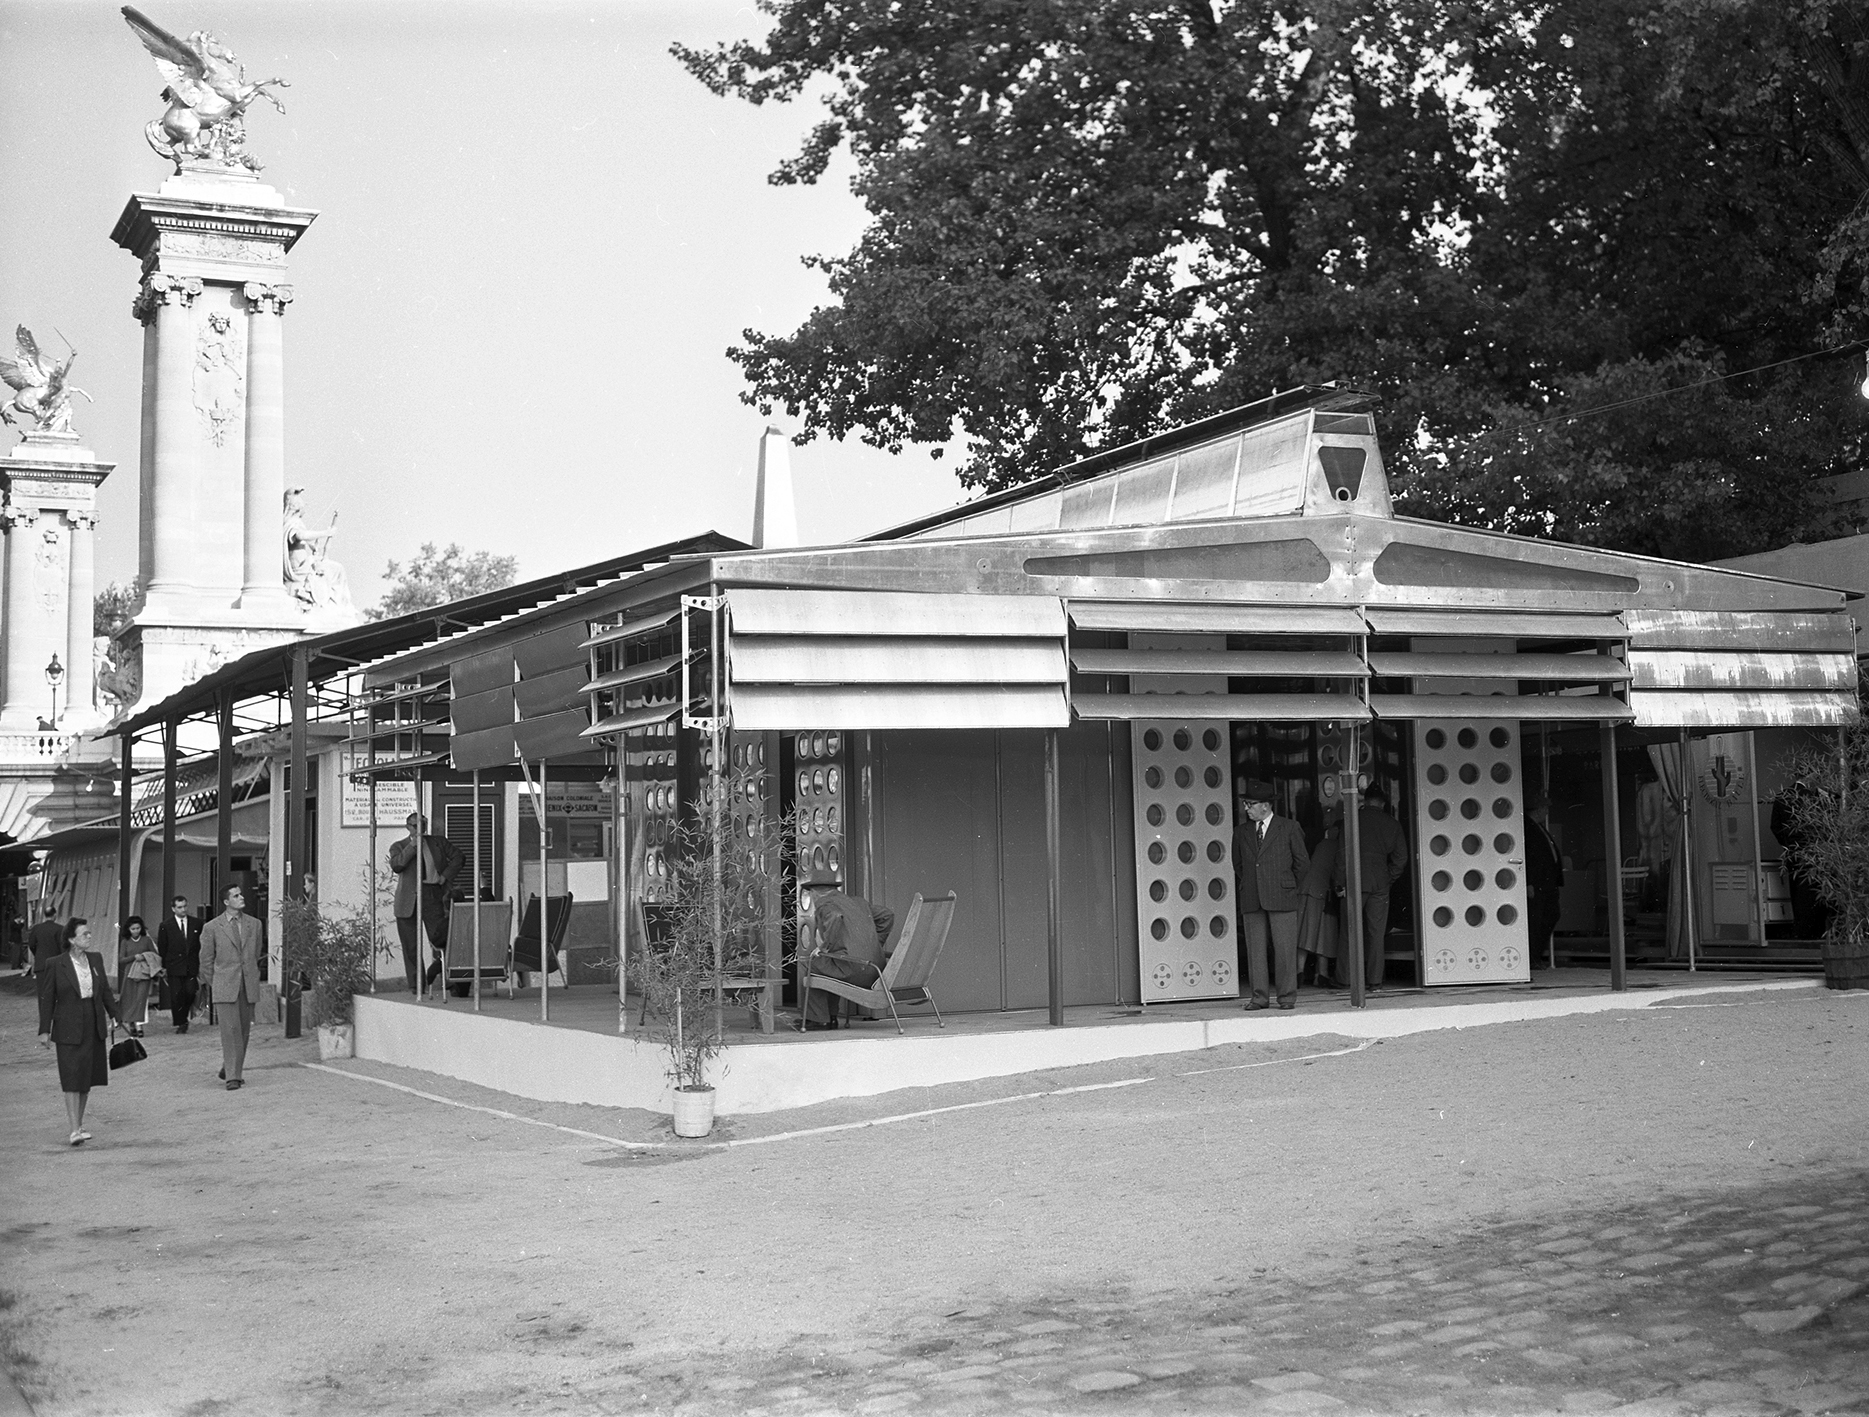 Maison Tropique pour Niamey, prototype à l’Exposition pour l’équipement de l’Union française, quai Alexandre-III, Paris, 1949.